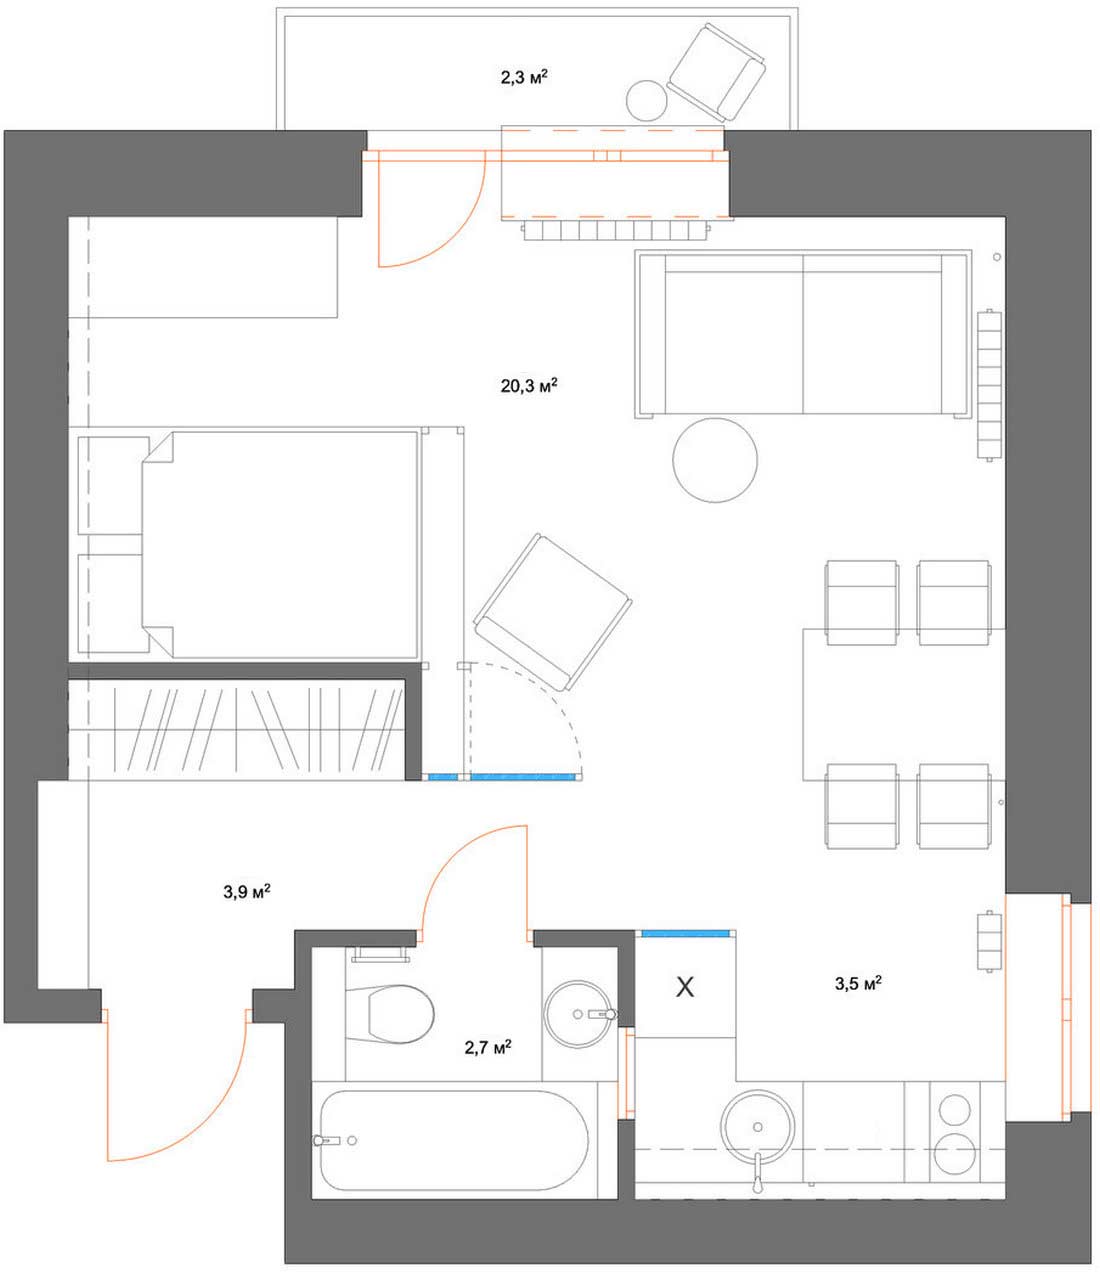 Kis lakás fantasztikus átalakulása - sok érdekes részlet fiatal hölgy 33m2-es otthonában